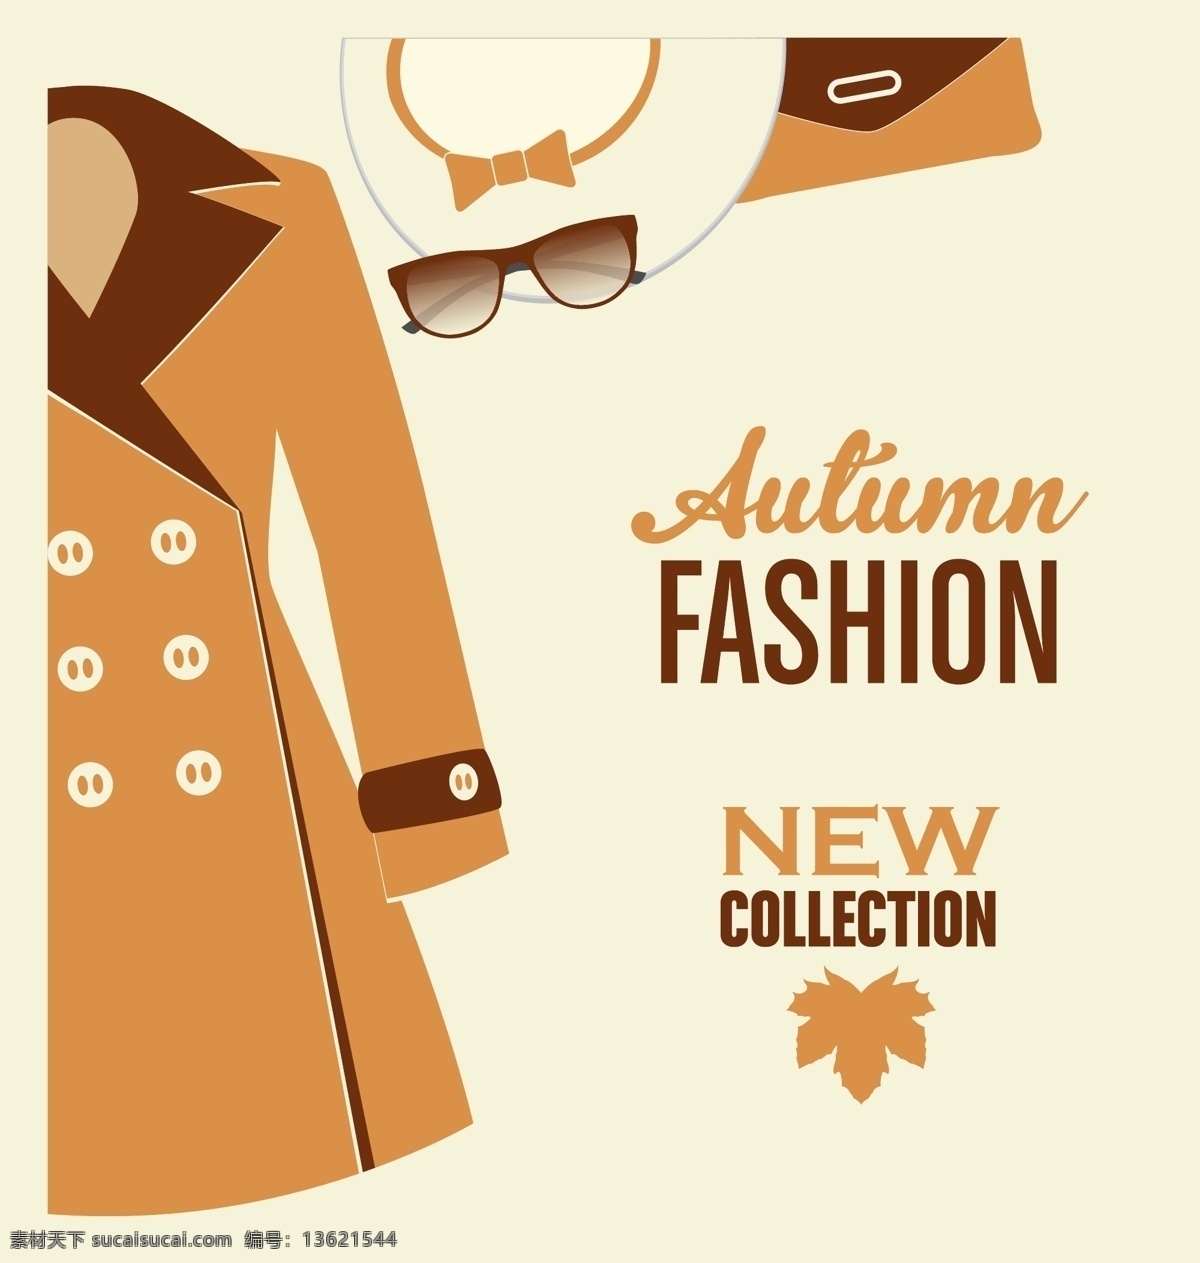 秋季时装设计 商业 销售 模板 时装 营销 秋季 网络 商店 文字 价格 标志 提供 新的 市场 服装 产品 符号 品牌